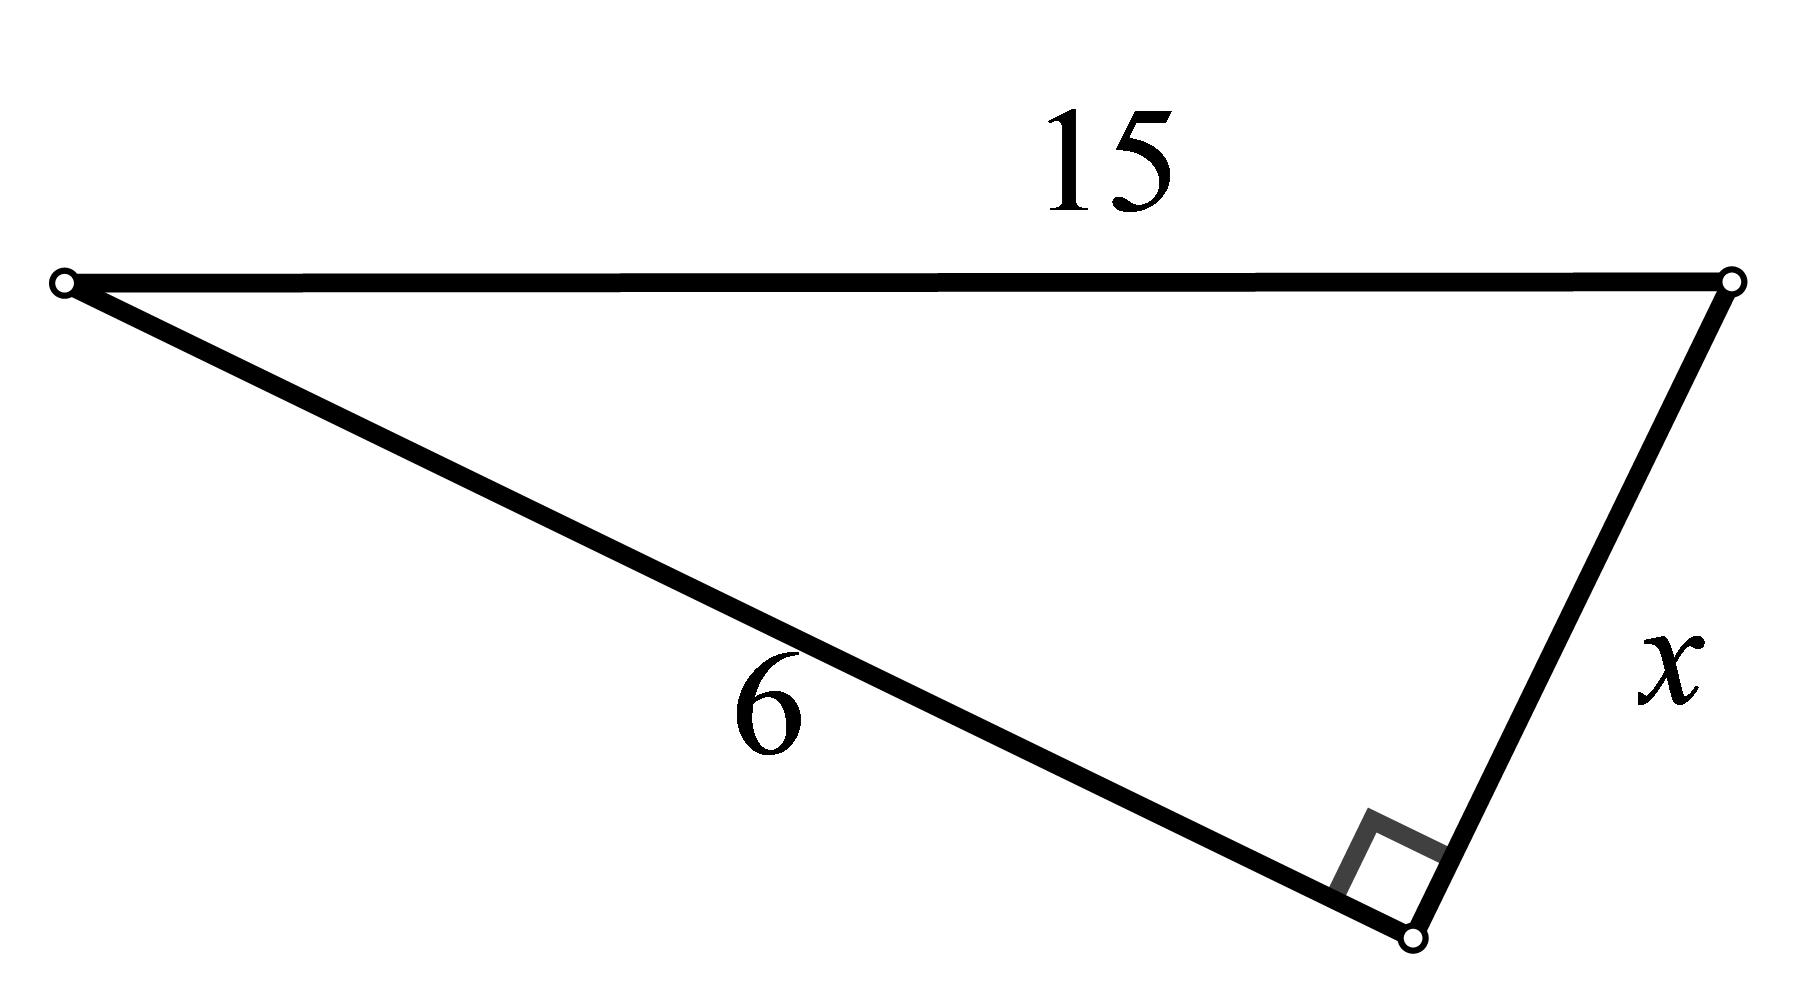 Slika prikazuje pravokutni trokut s hipotenuzom duljine 15 cm i jednom katetom duljine 6 cm